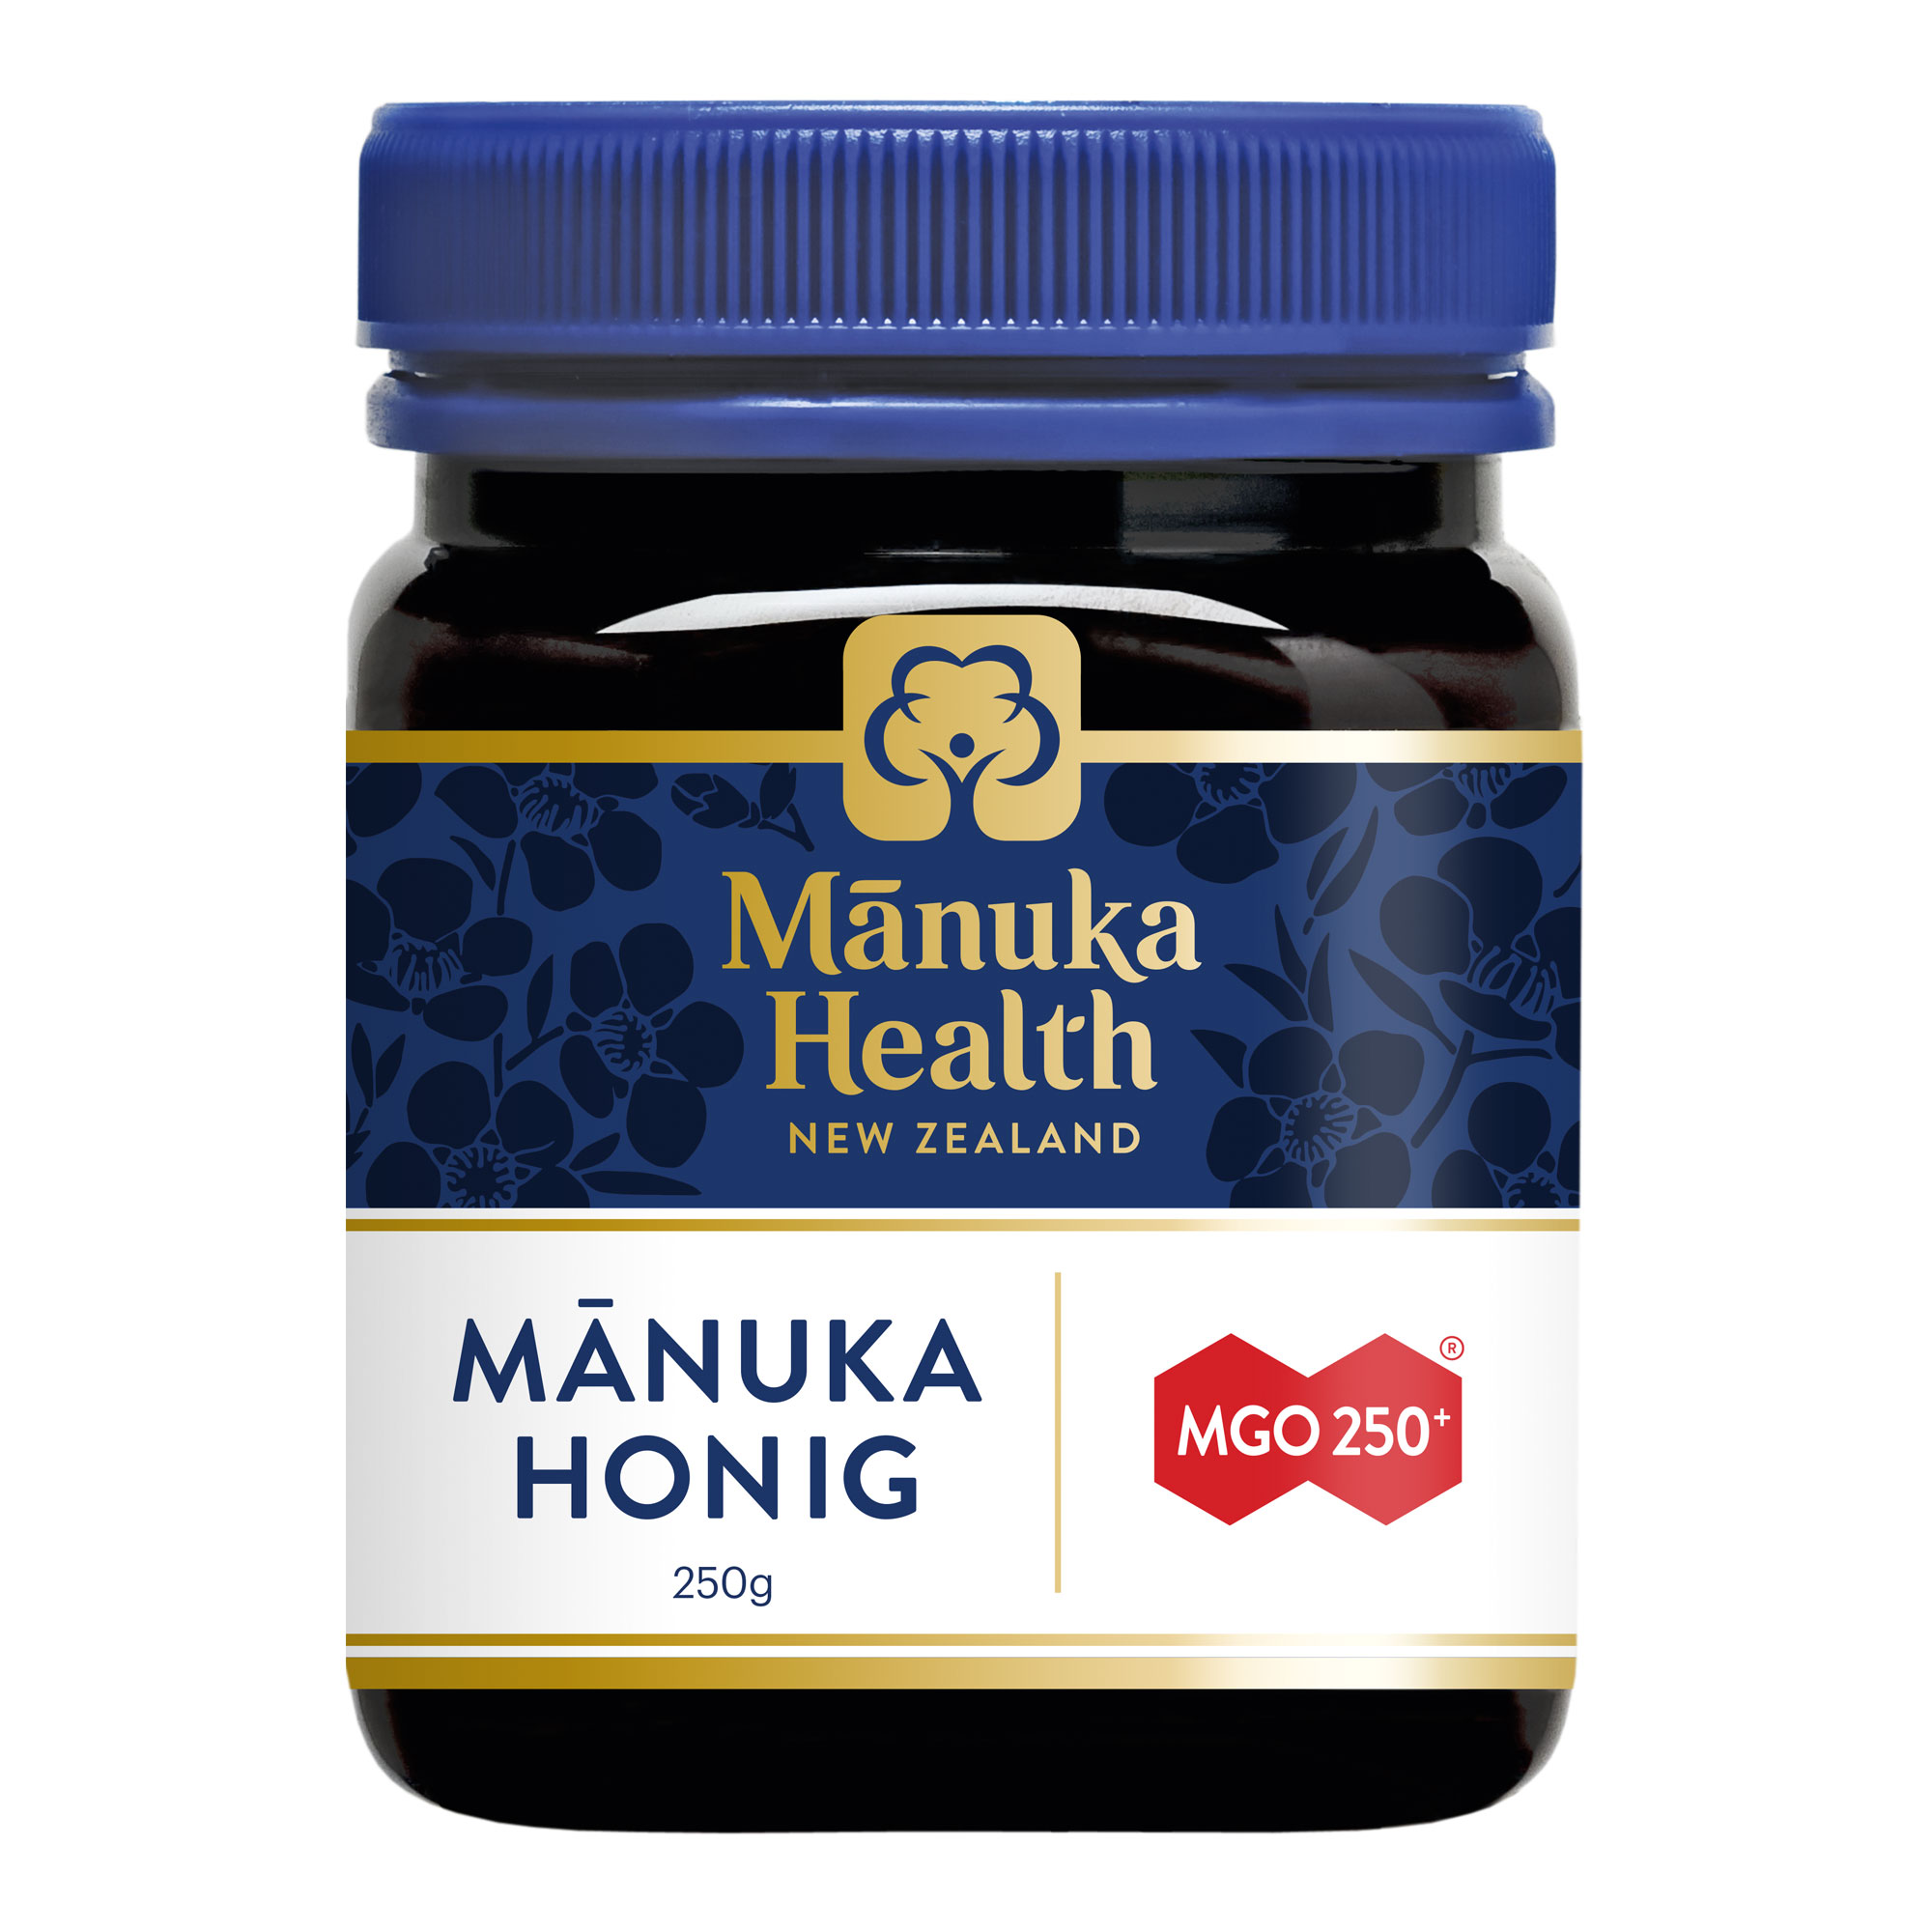 Manuka Honig aus Neuseeland zur Stärkung des allgemeinen Wohlbefindens. Enthält mindestens 250 mg MGO.